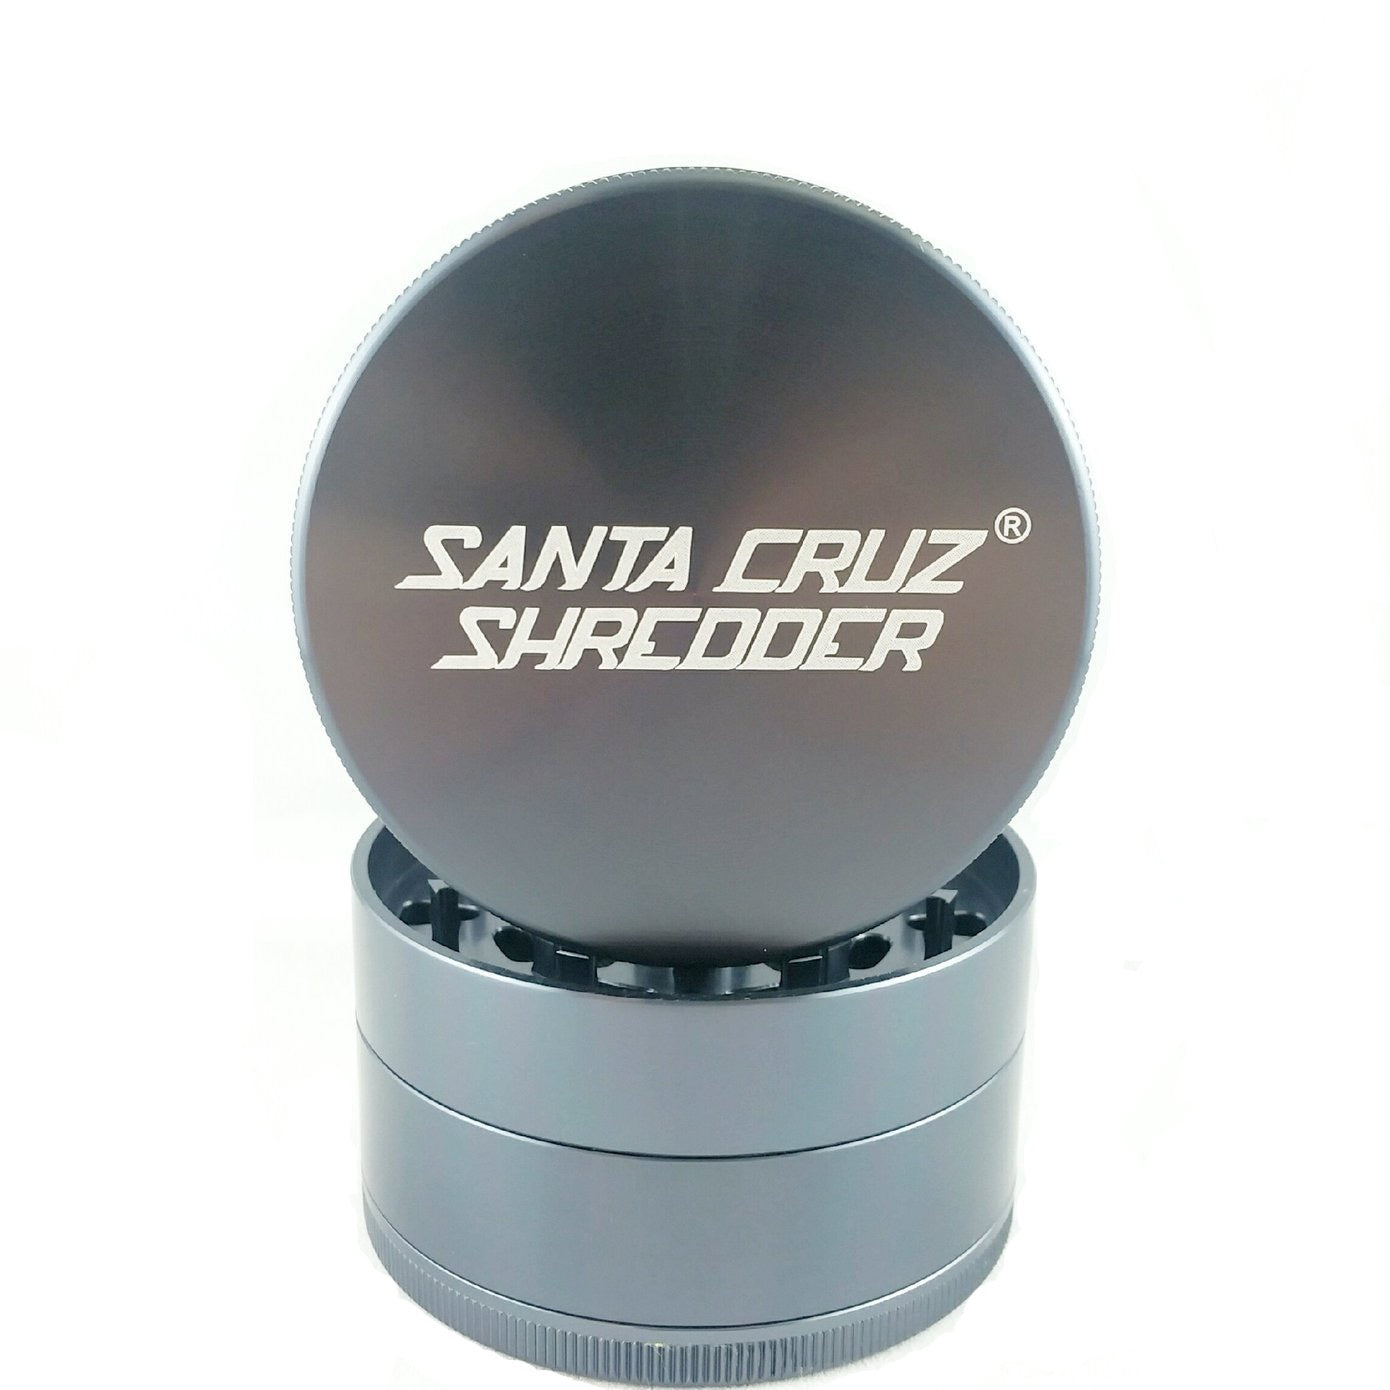 Santa Cruz Shredder Large 4 Piece Grinder (Grey) show variants